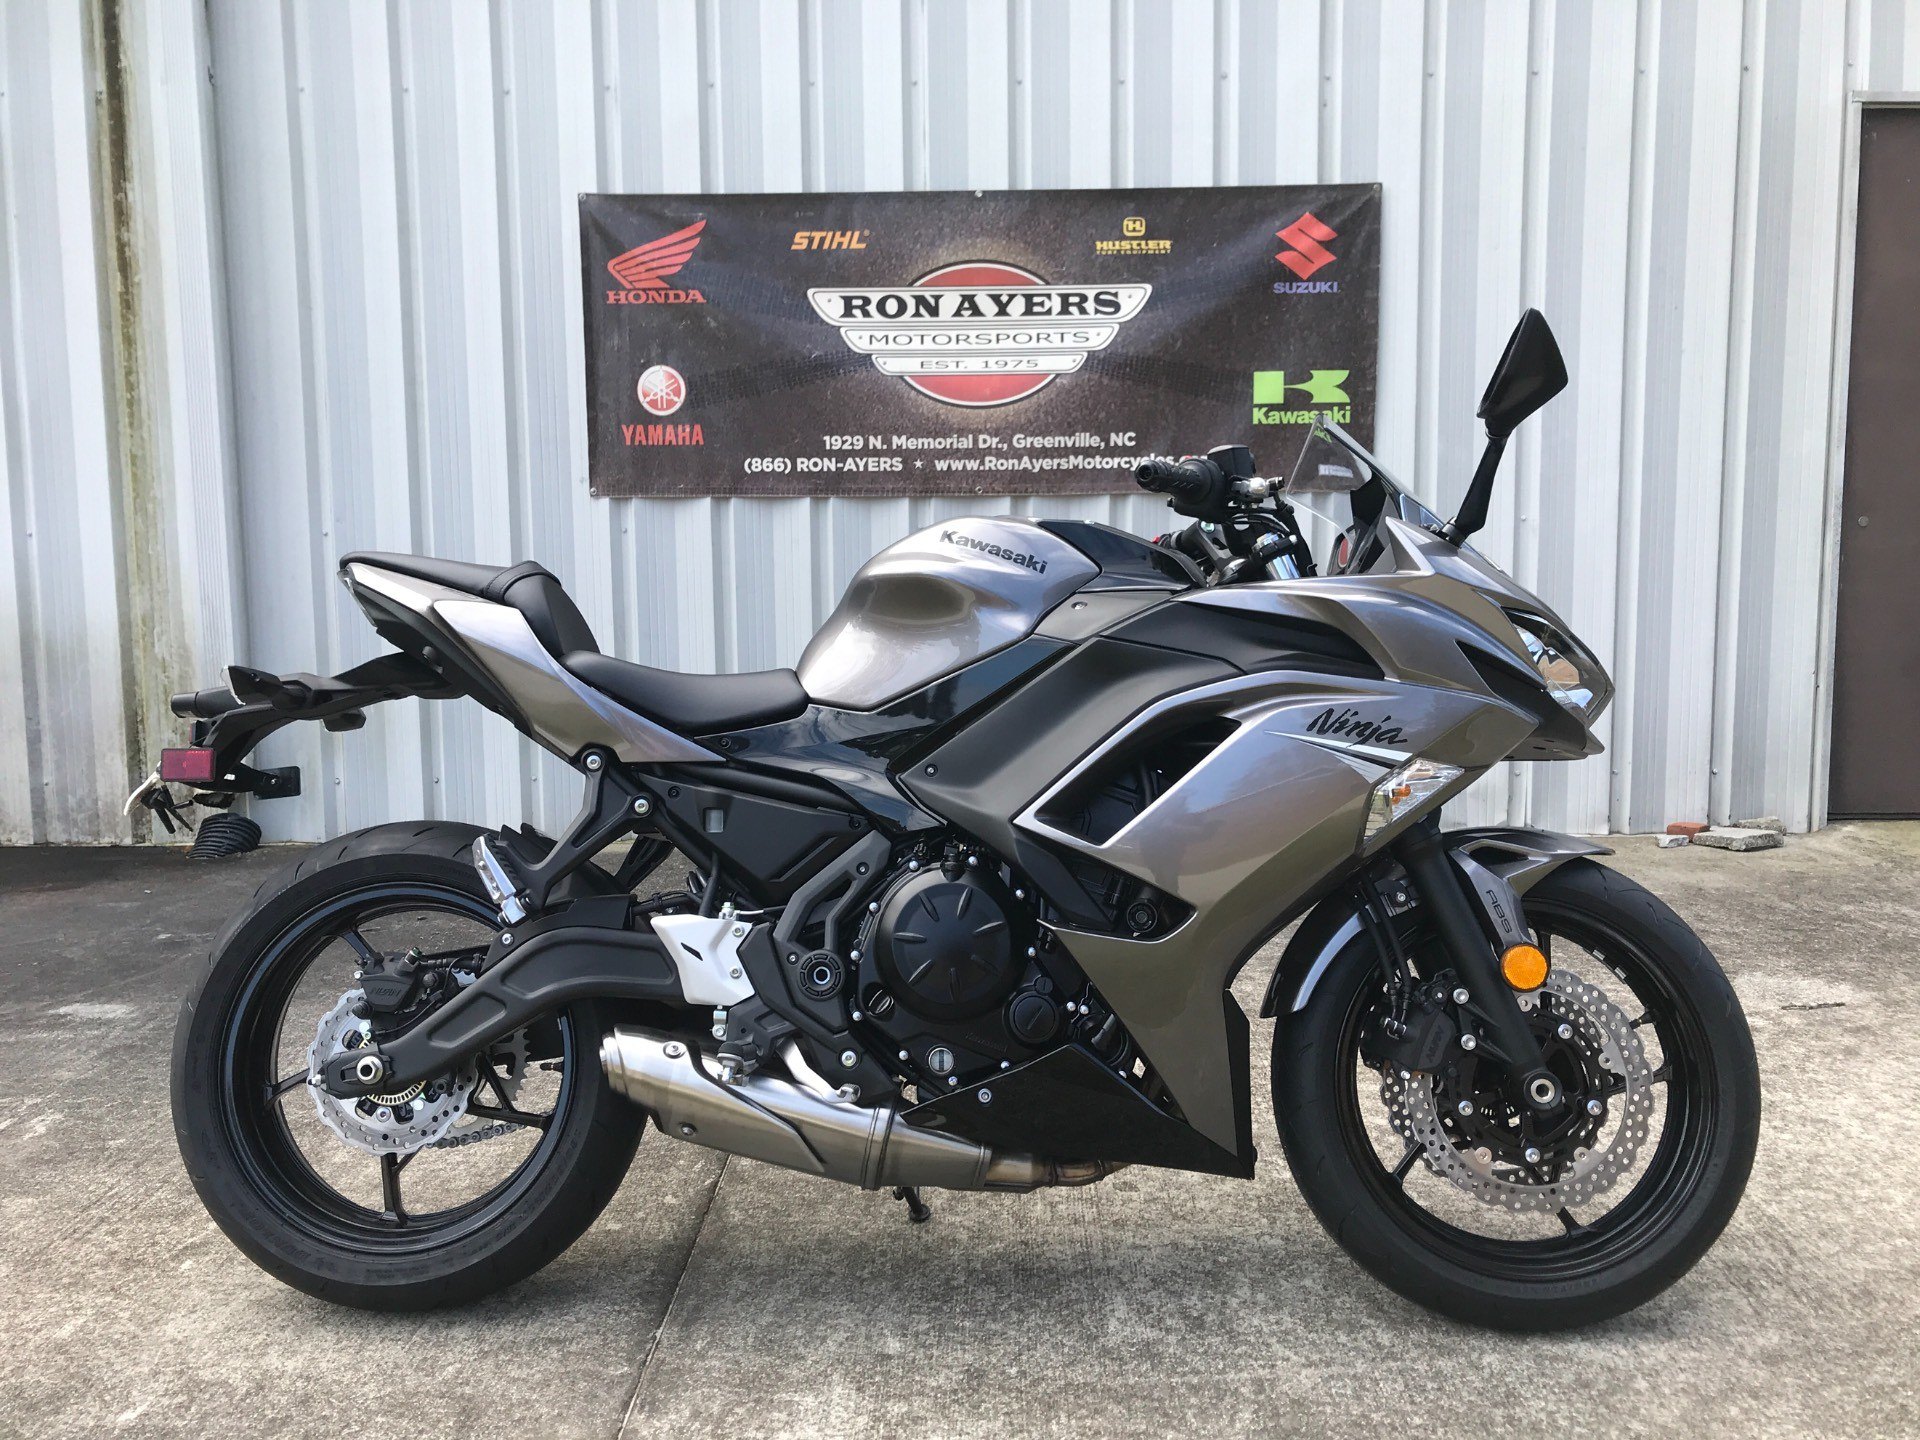 New 2021 Kawasaki Ninja 650 ABS Motorcycles in Greenville, NC | Stock ...